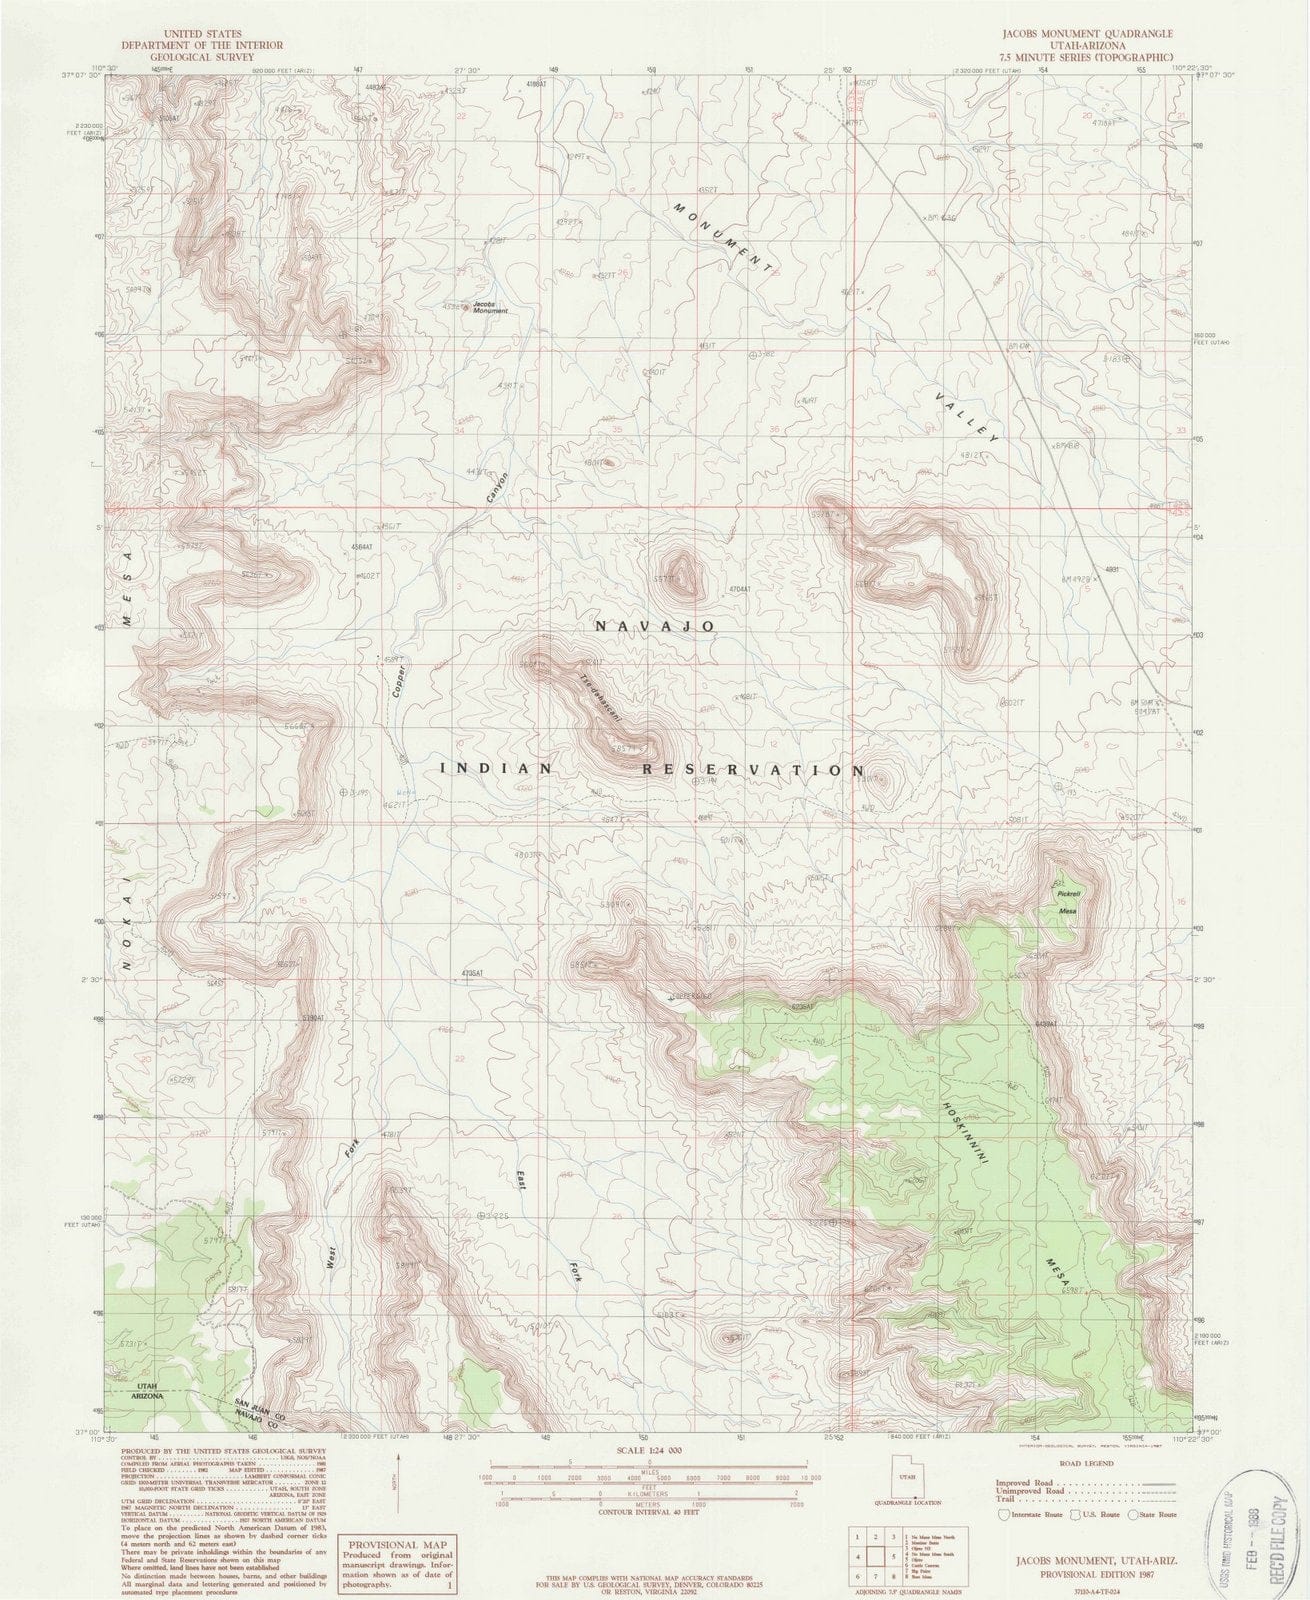 1987 Jacobs Monument, UT - Utah - USGS Topographic Map